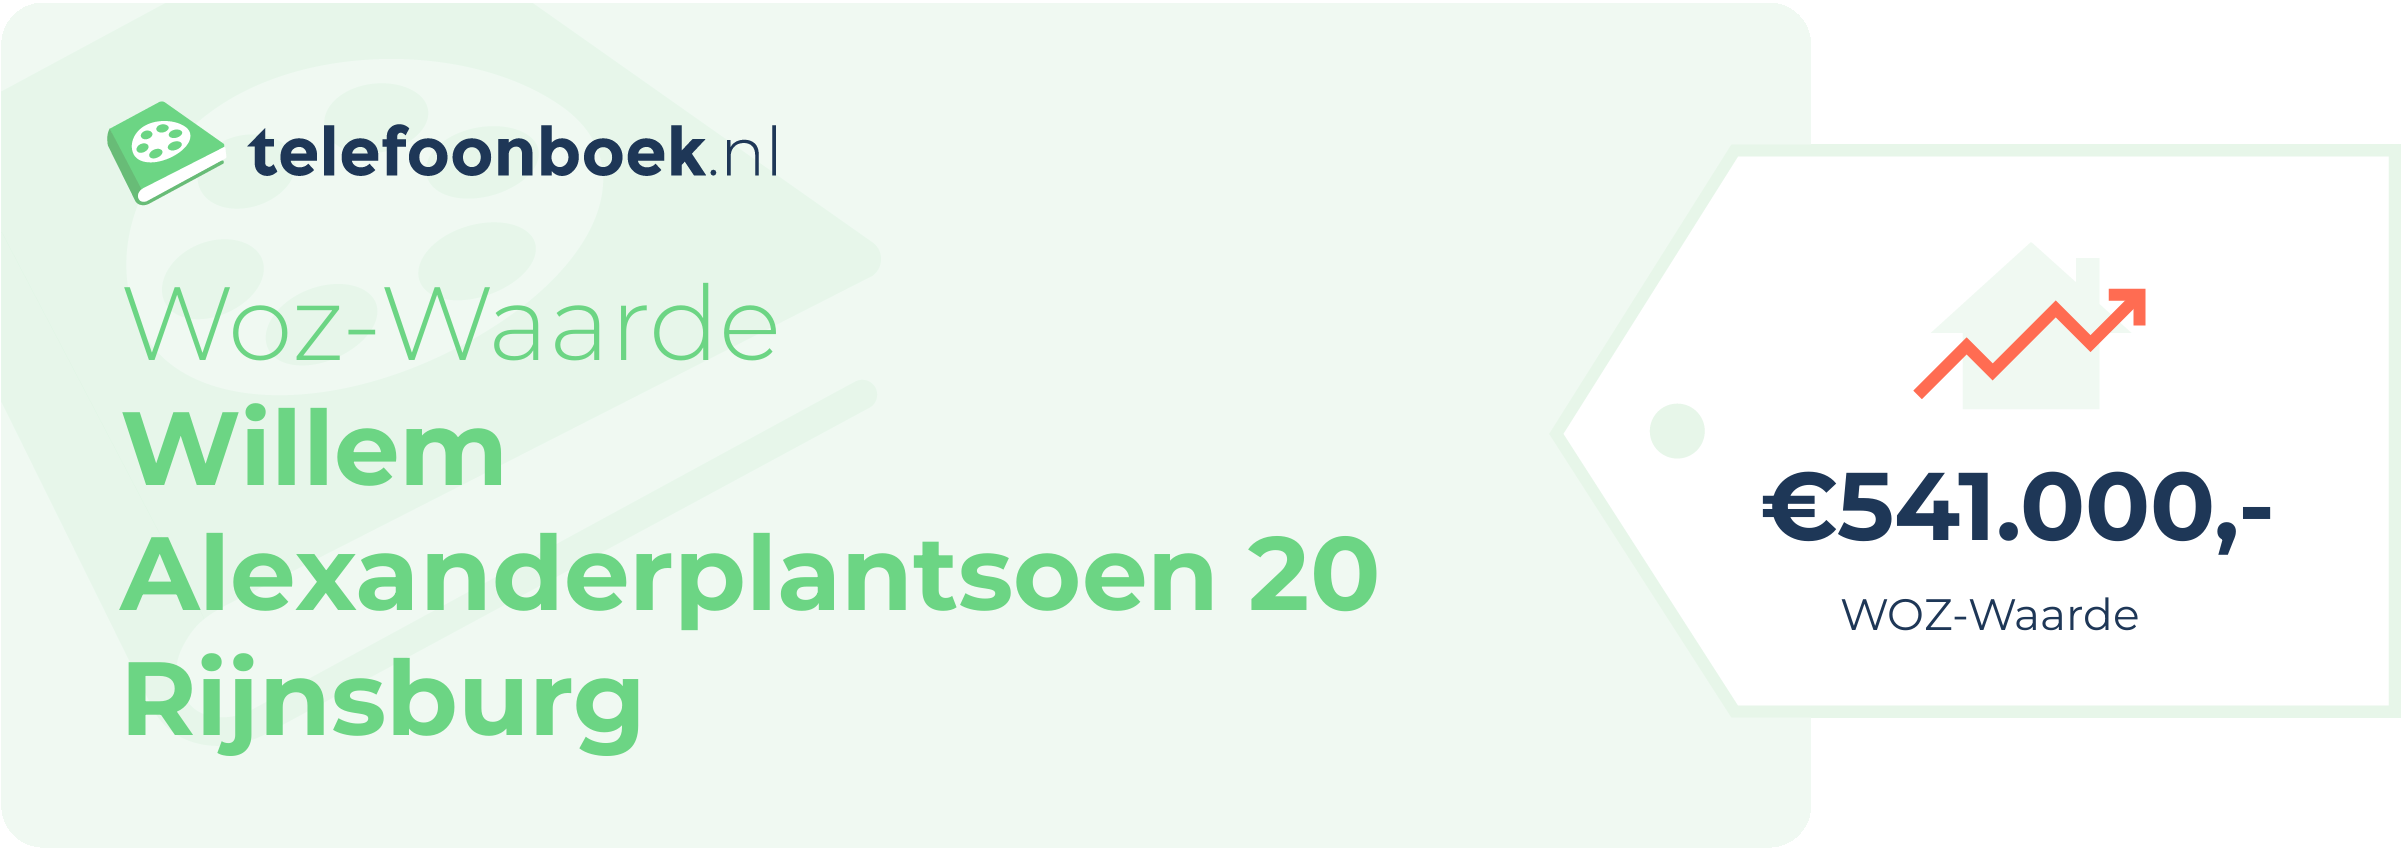 WOZ-waarde Willem Alexanderplantsoen 20 Rijnsburg